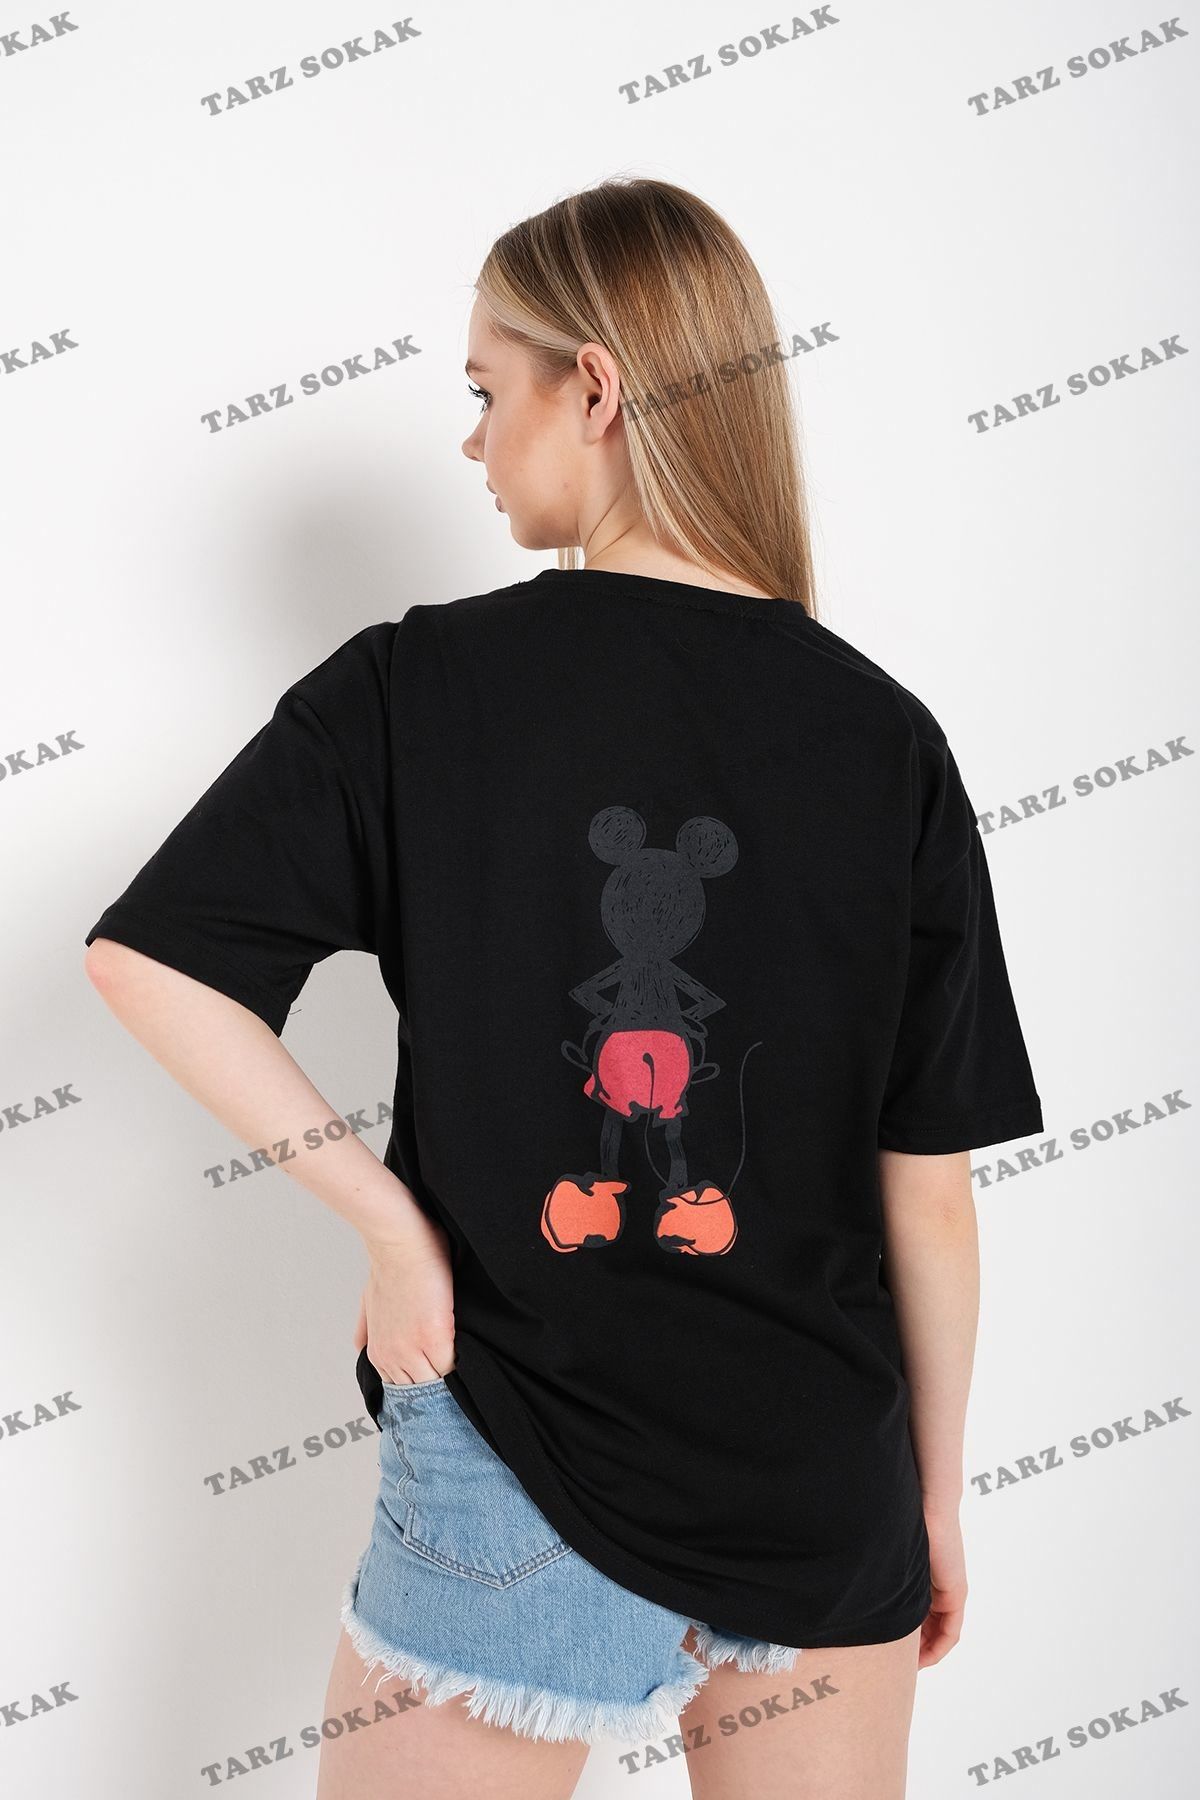 Tarzsokak Kadın Siyah Sırt Baskılı Mickey Mouse